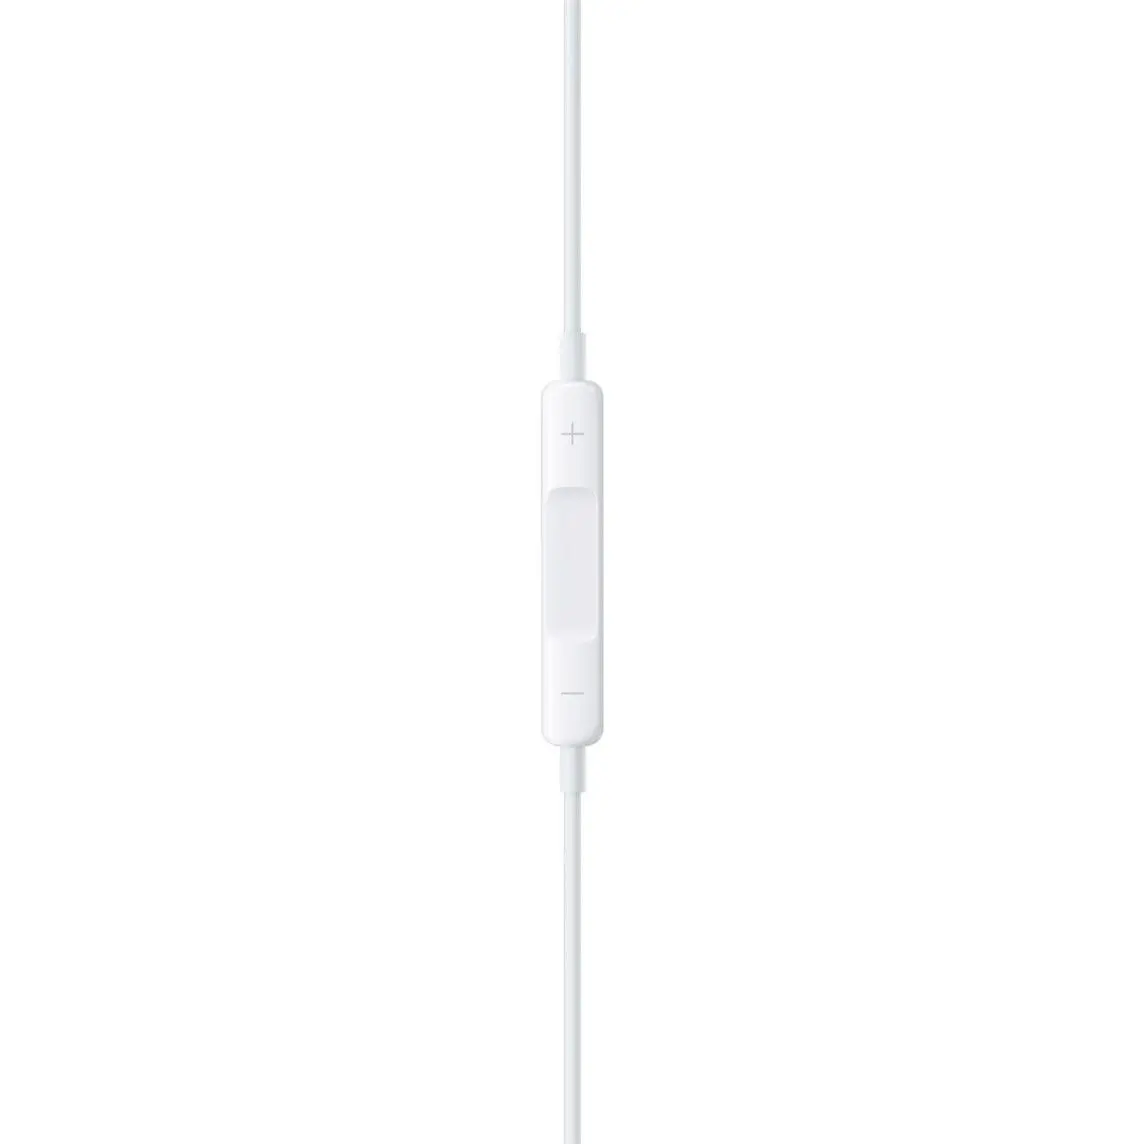 Casti In-ear Apple EarPods, USB-C, Alb